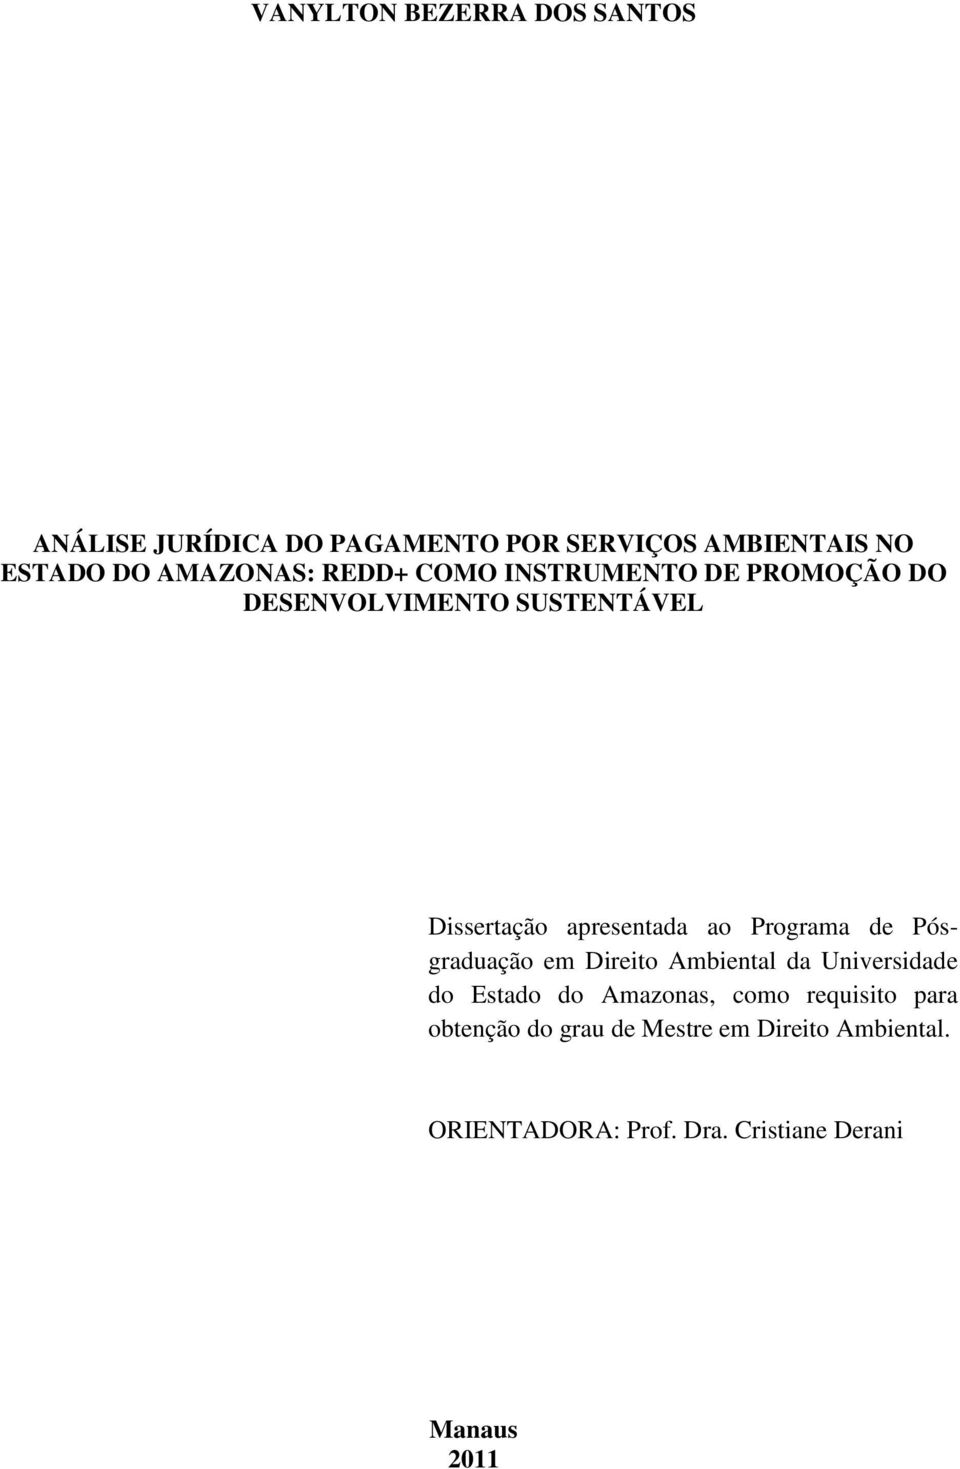 ao Programa de Pósgraduação em Direito Ambiental da Universidade do Estado do Amazonas, como